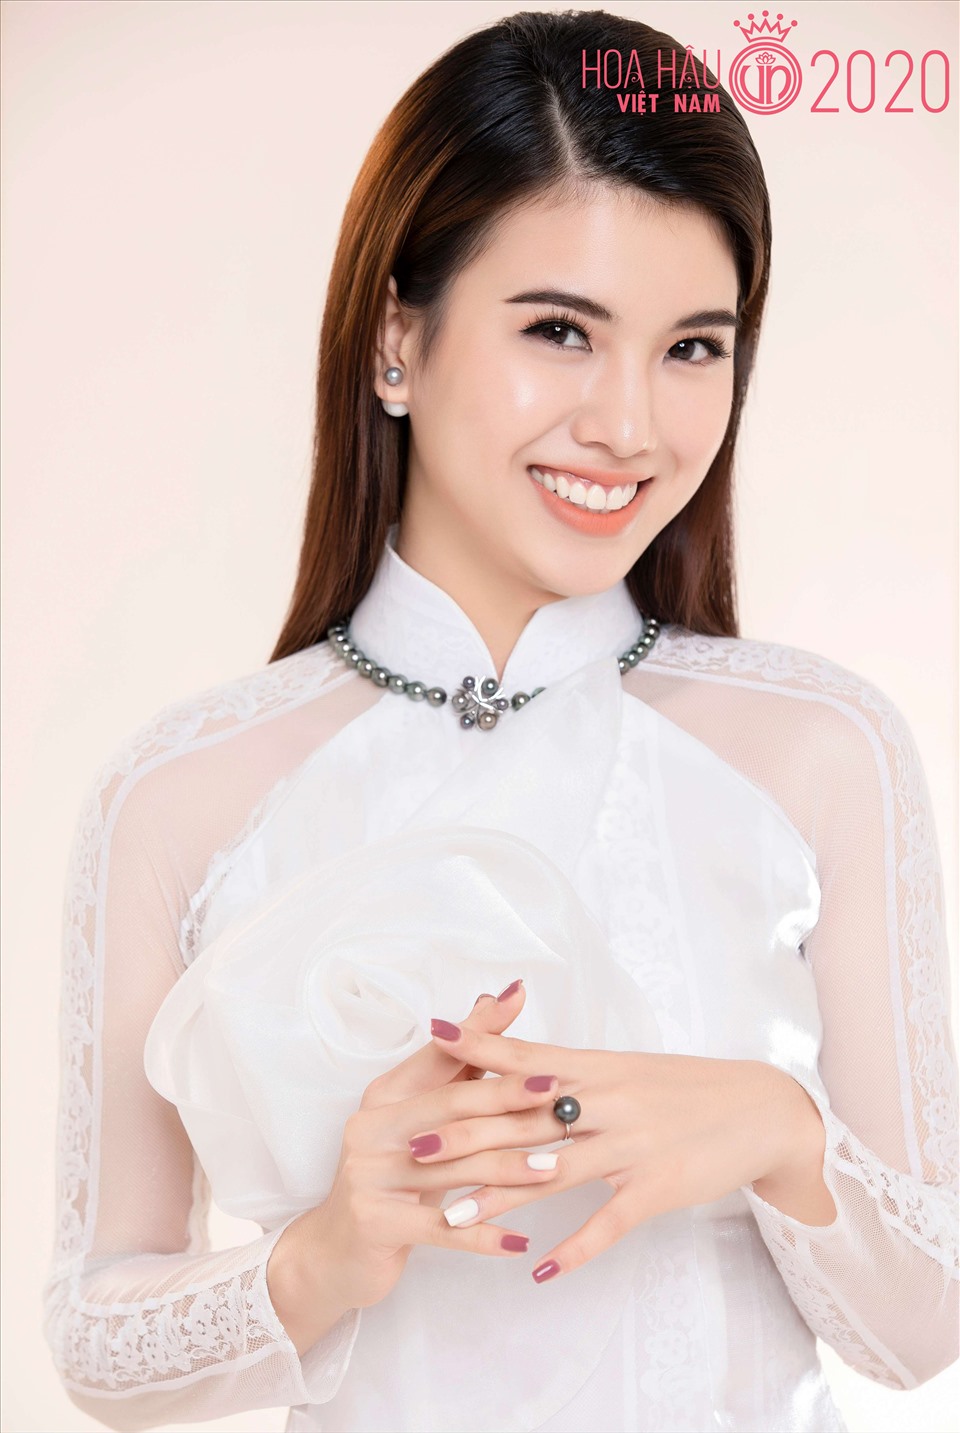 Hoa khôi Kinh đô Việt Nam 2019 Đặng Phương Nhung, sinh năm 2000 cũng là một ứng viên sáng giá cho vương miện Hoa hậu Việt Nam 2020. Ảnh: Lê Thiện Viễn.